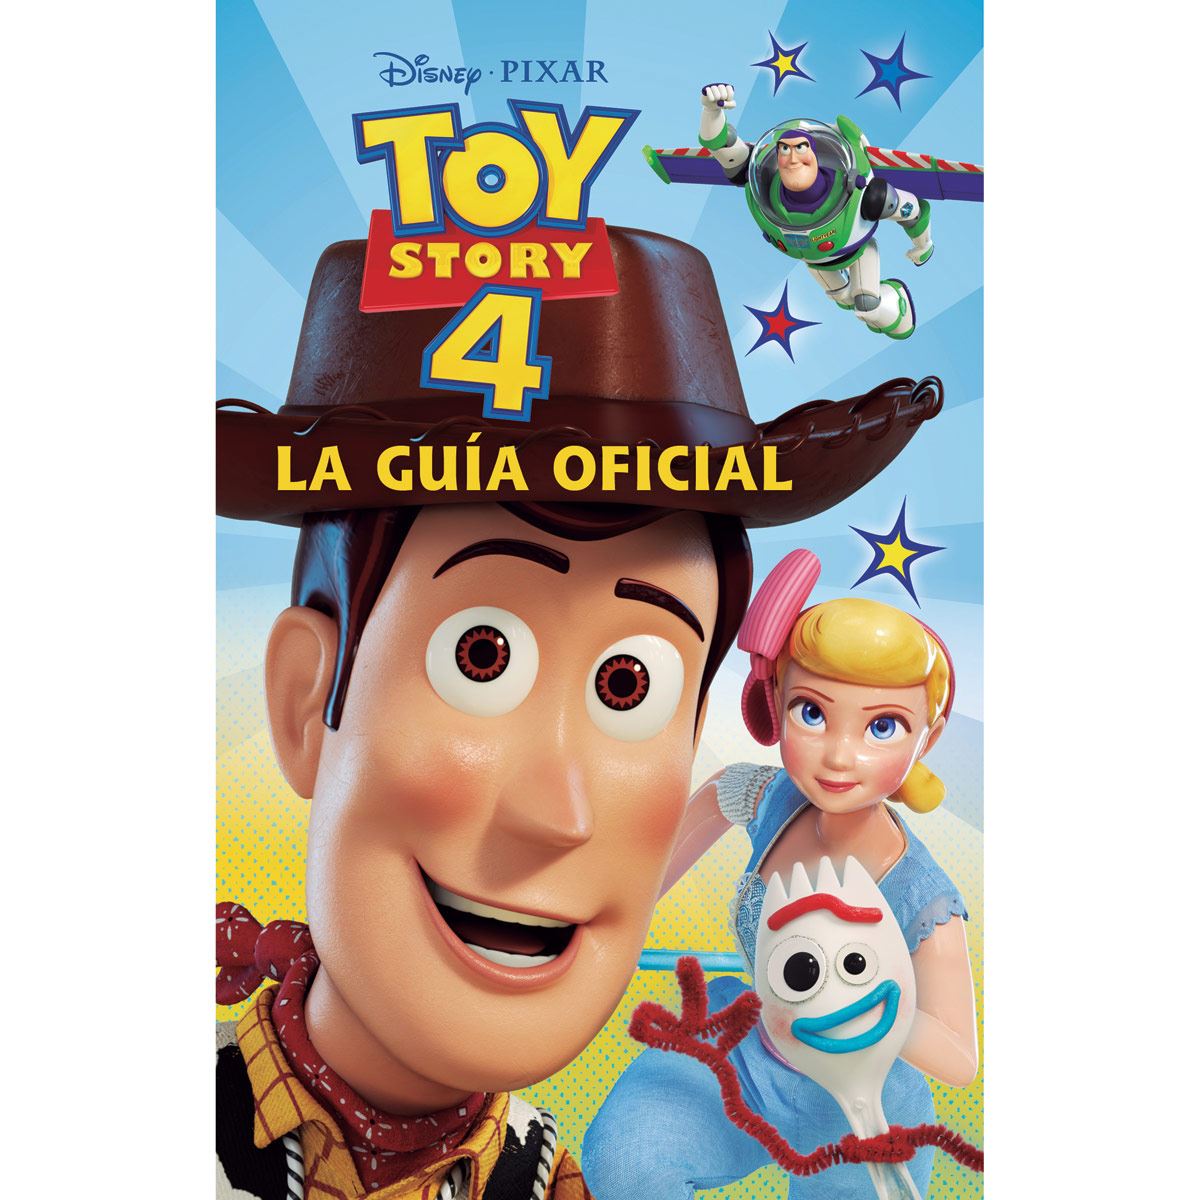 Toy story 4. La guía oficial